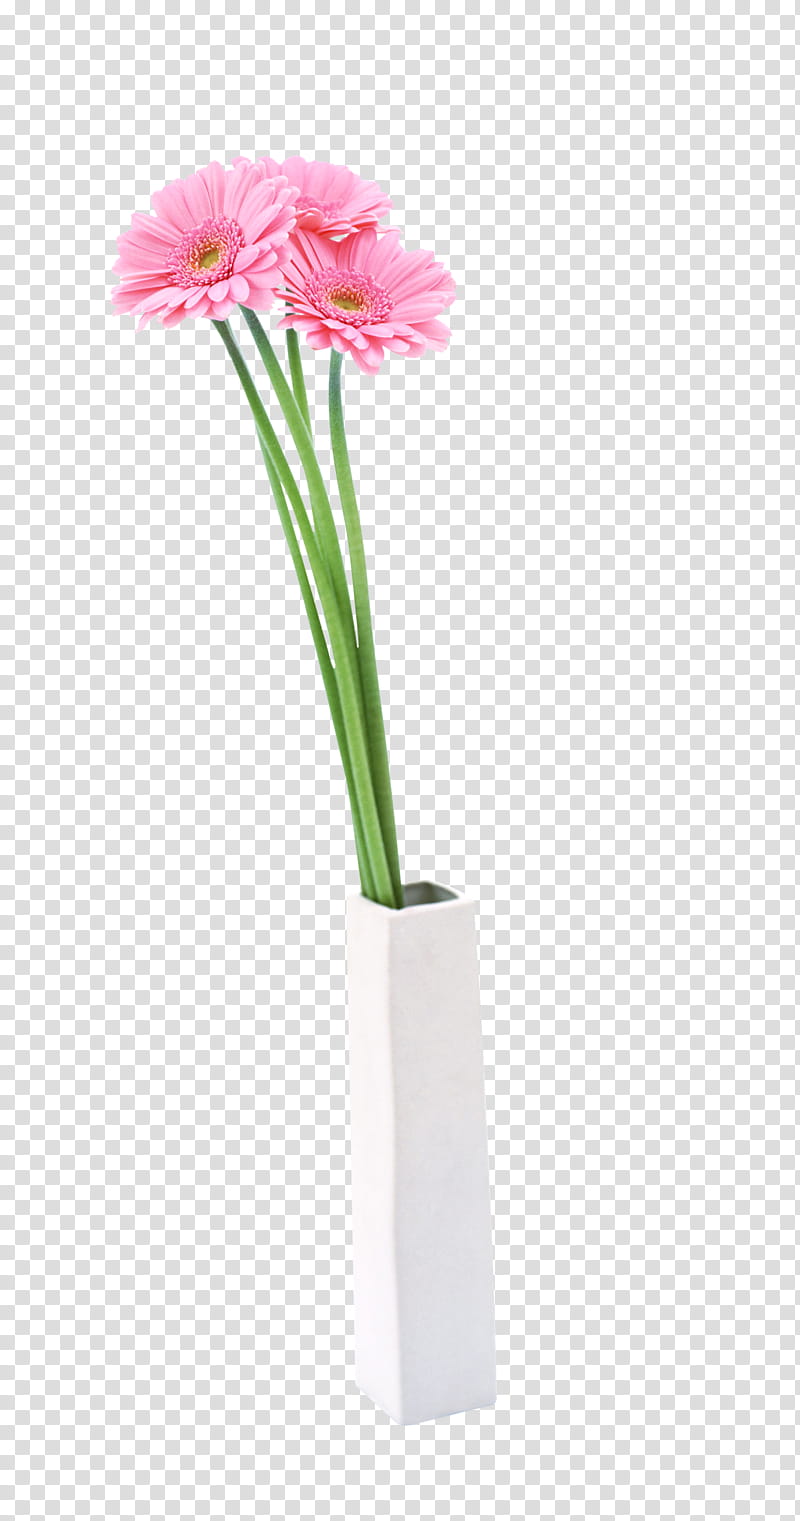 Pink Flower, Vase, Flowerpot, Flower Bouquet, Floristry, Plants, Floral Design, White transparent background PNG clipart